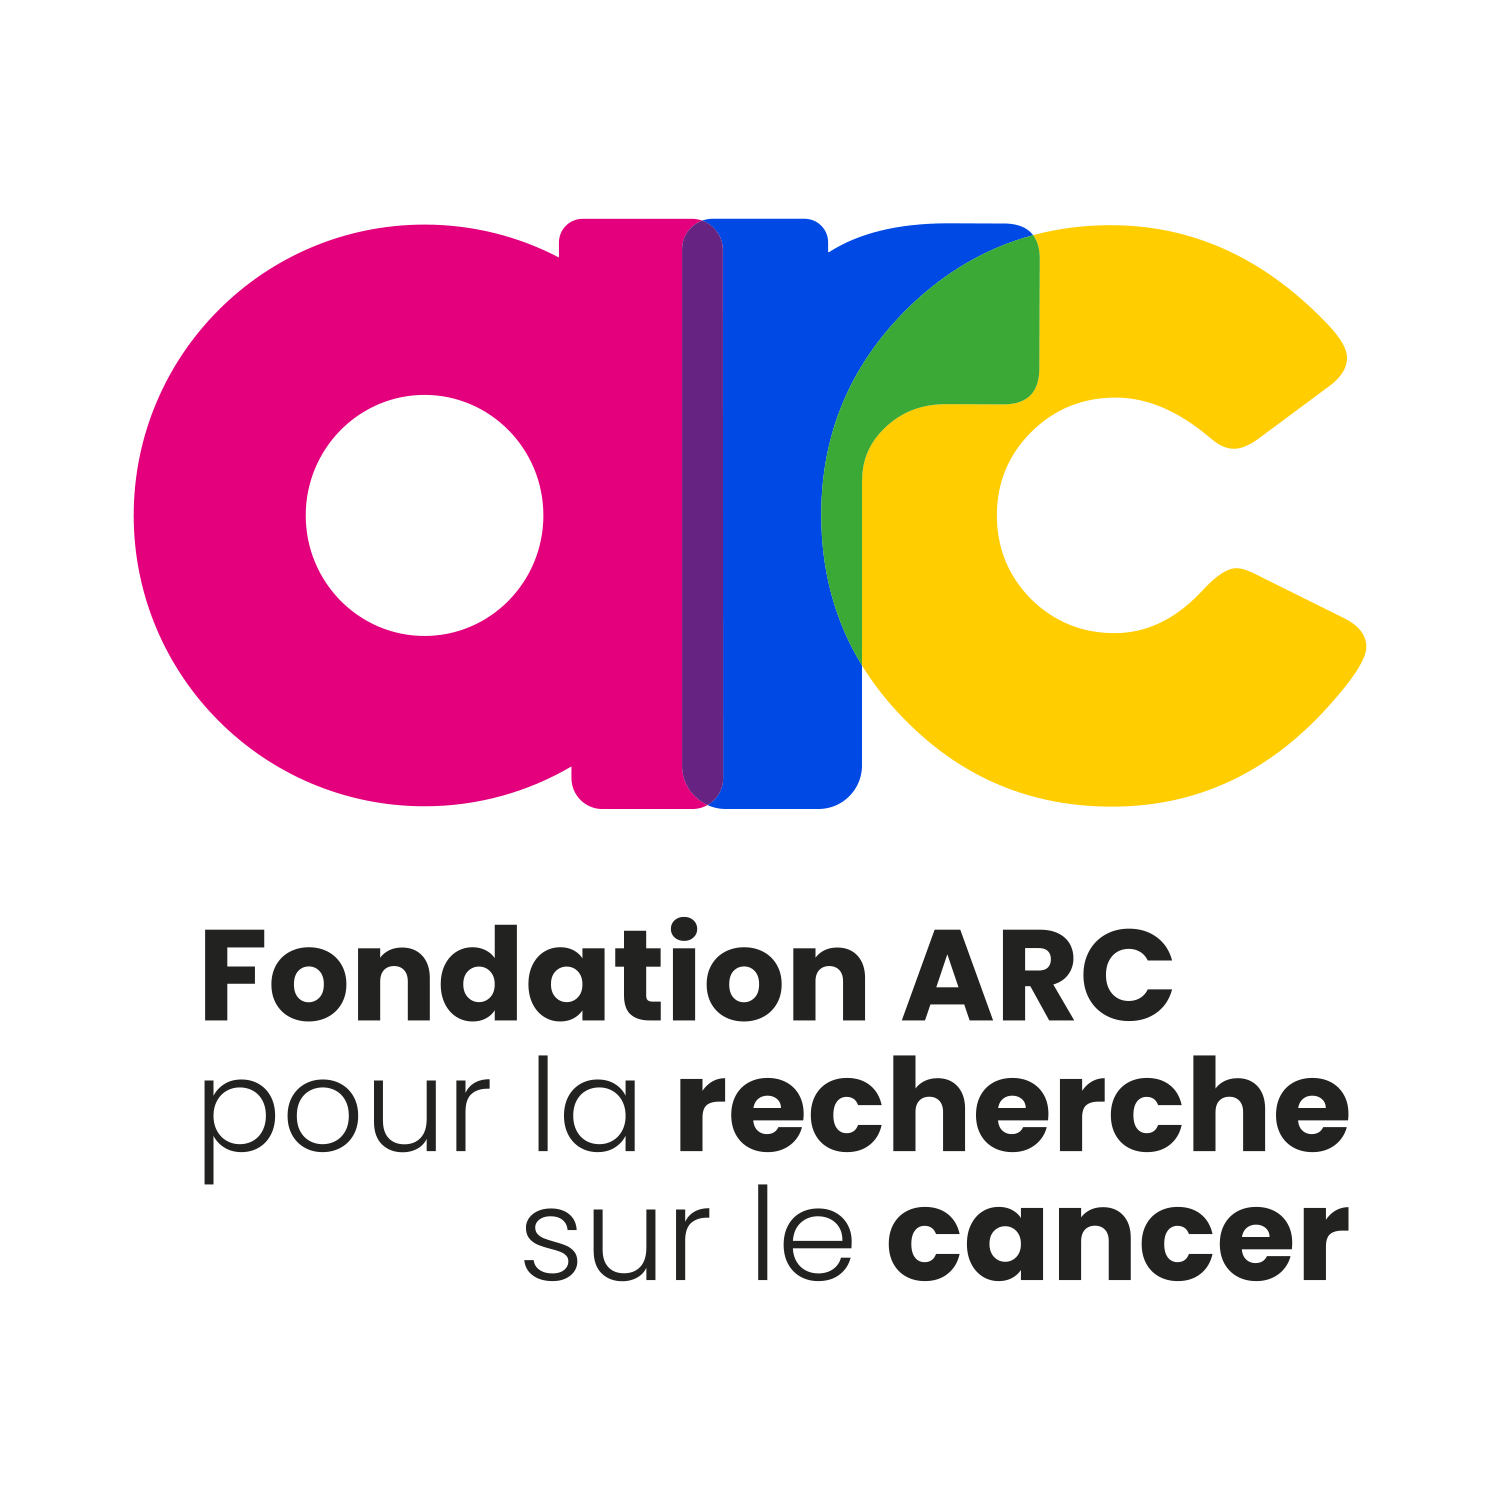 Fondation ARC pour la recherche sur le cancer - Infodon